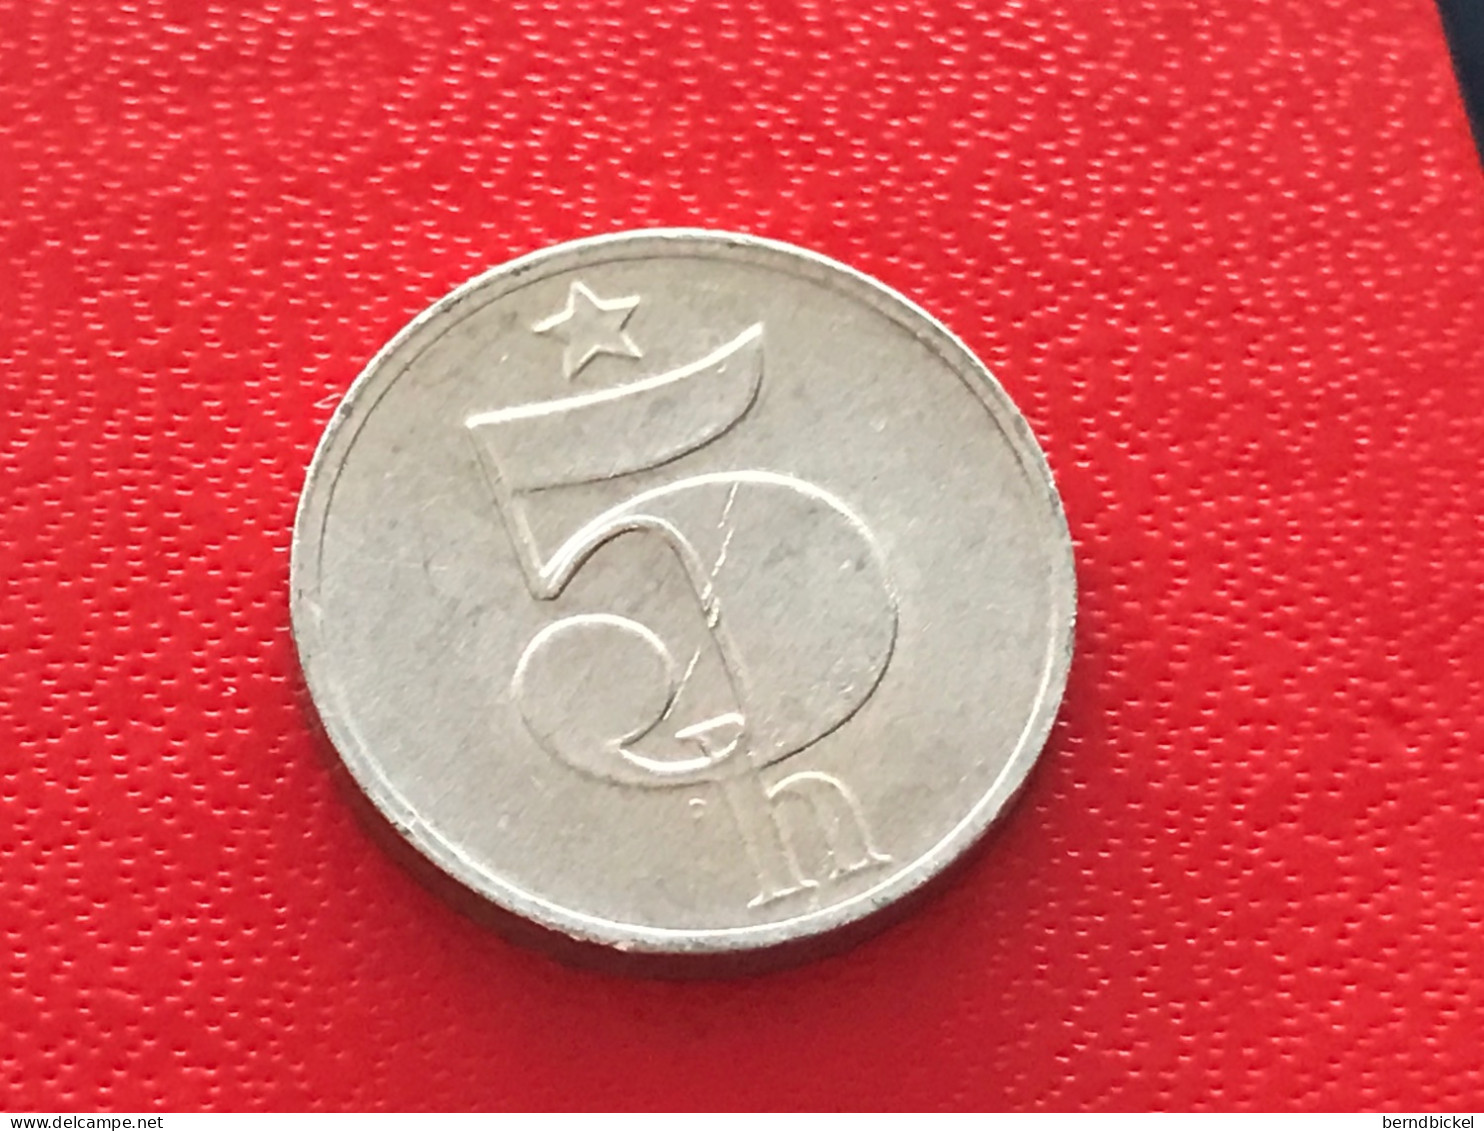 Münze Münzen Umlaufmünze Tschechoslowakei 5 Heller 1977 - Tschechoslowakei